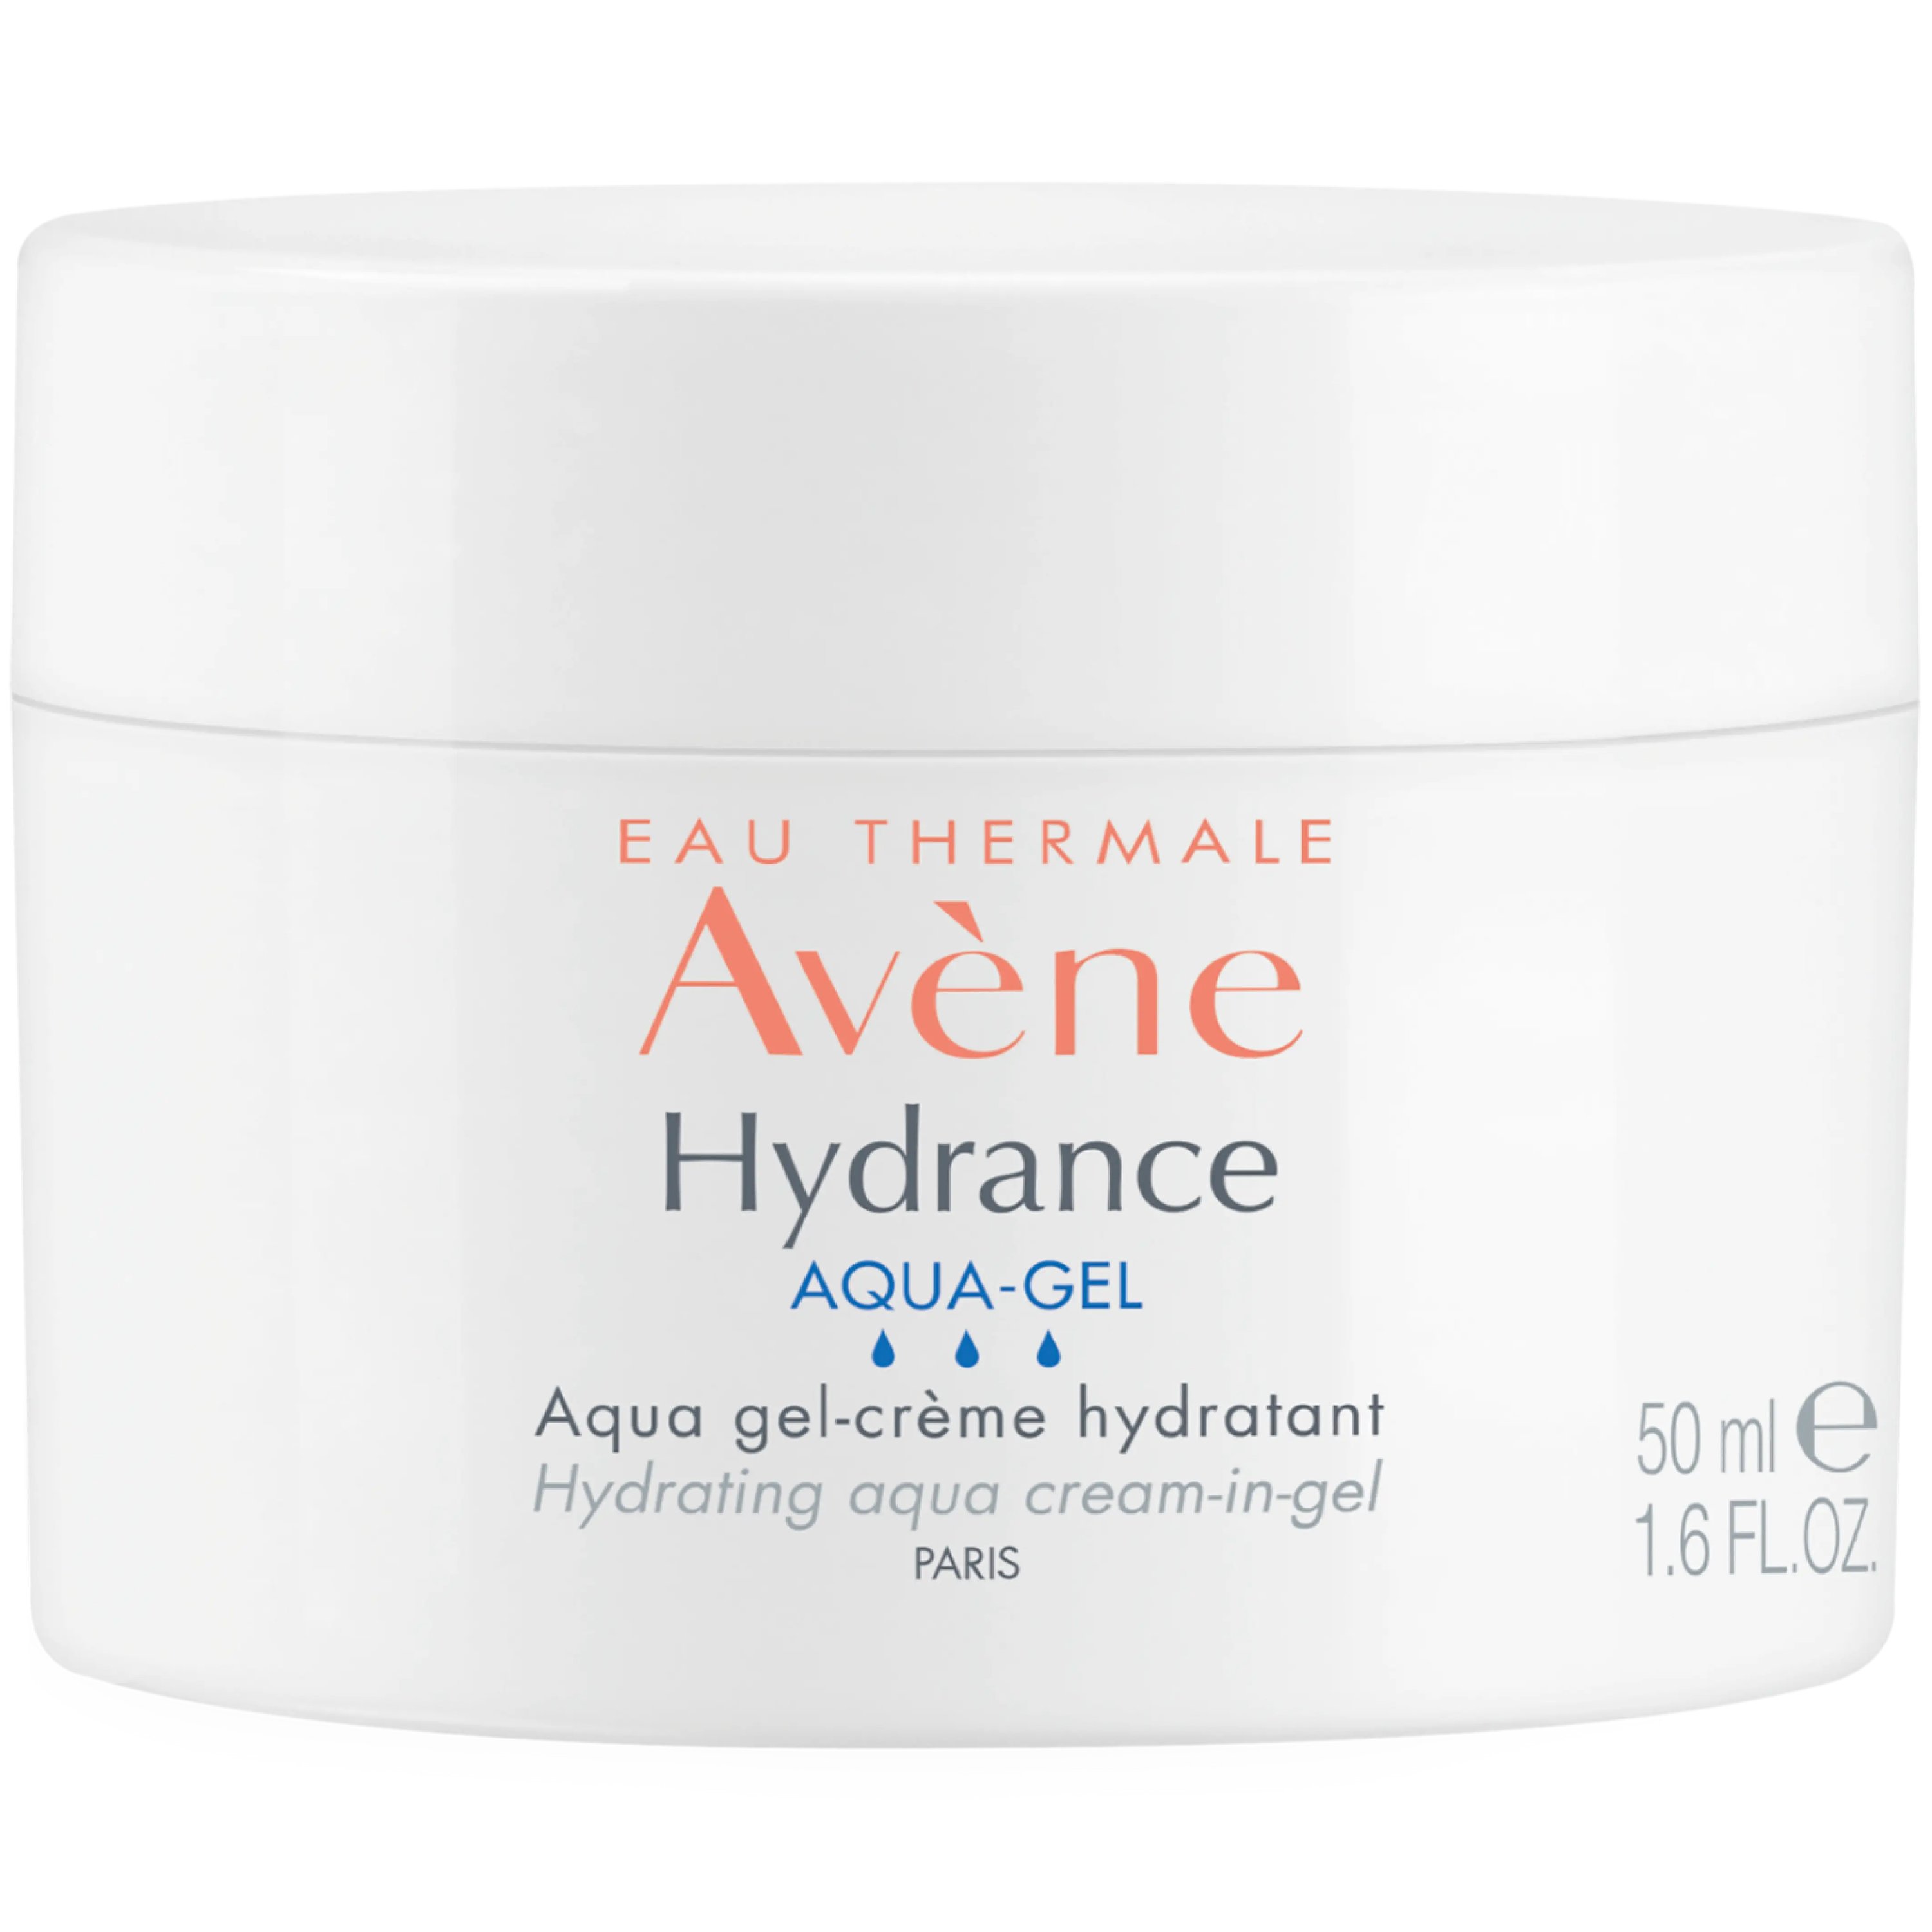 Avène Avene Hydrance Aqua-Gel Face Cream Ενυδατική Κρέμα Προσώπου, Λαιμού & Ματιών για Ευαίσθητες, Αφυδατωμένες Επιδερμίδες 50ml